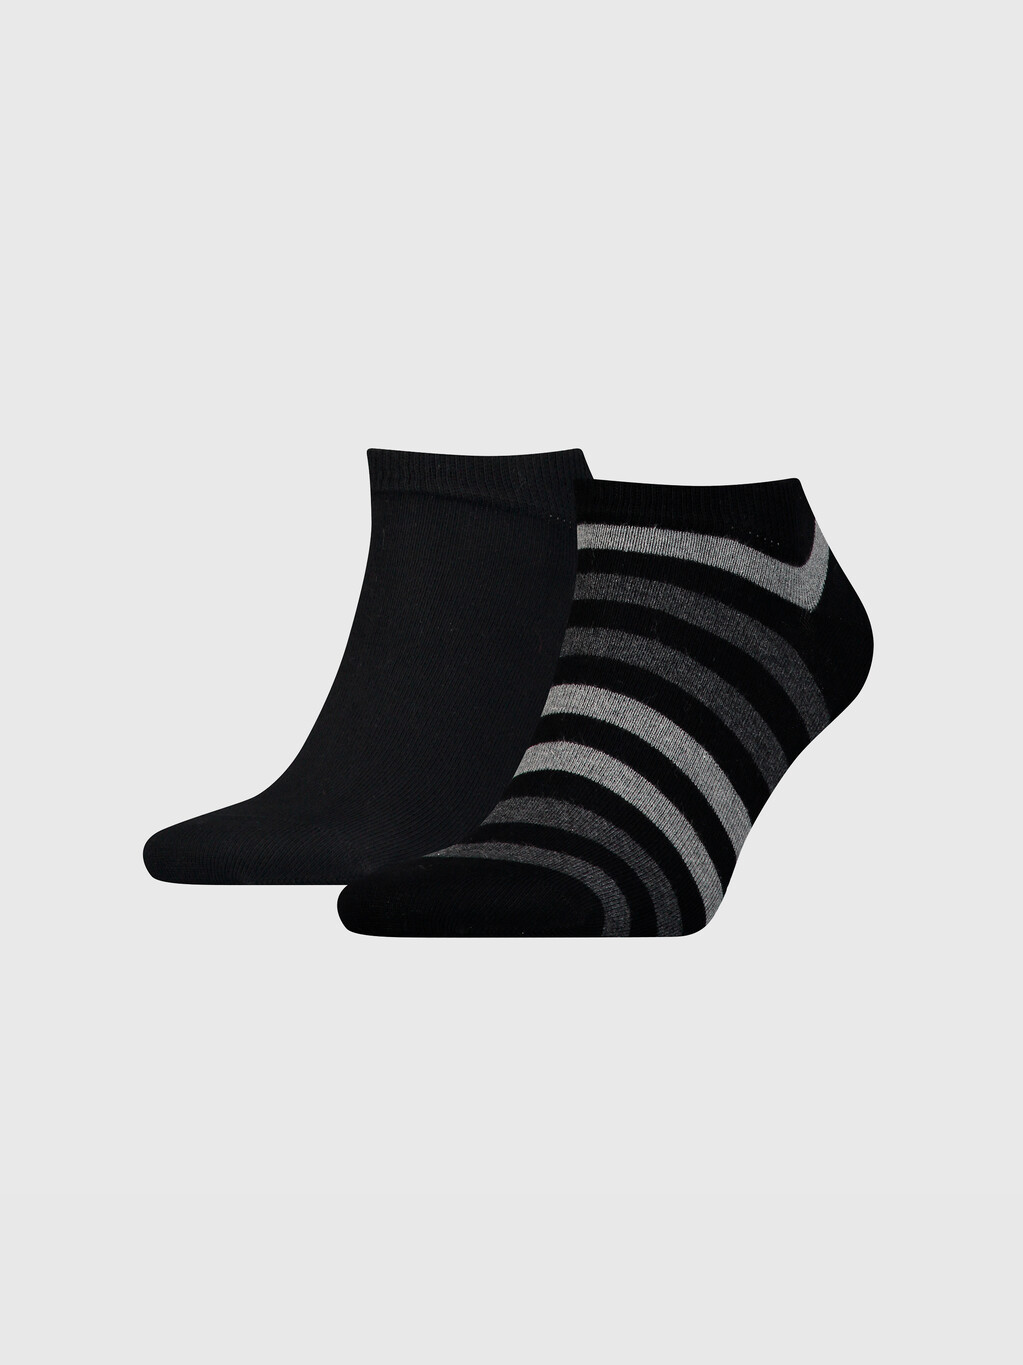 兩色條紋運動鞋型船襪, black, hi-res